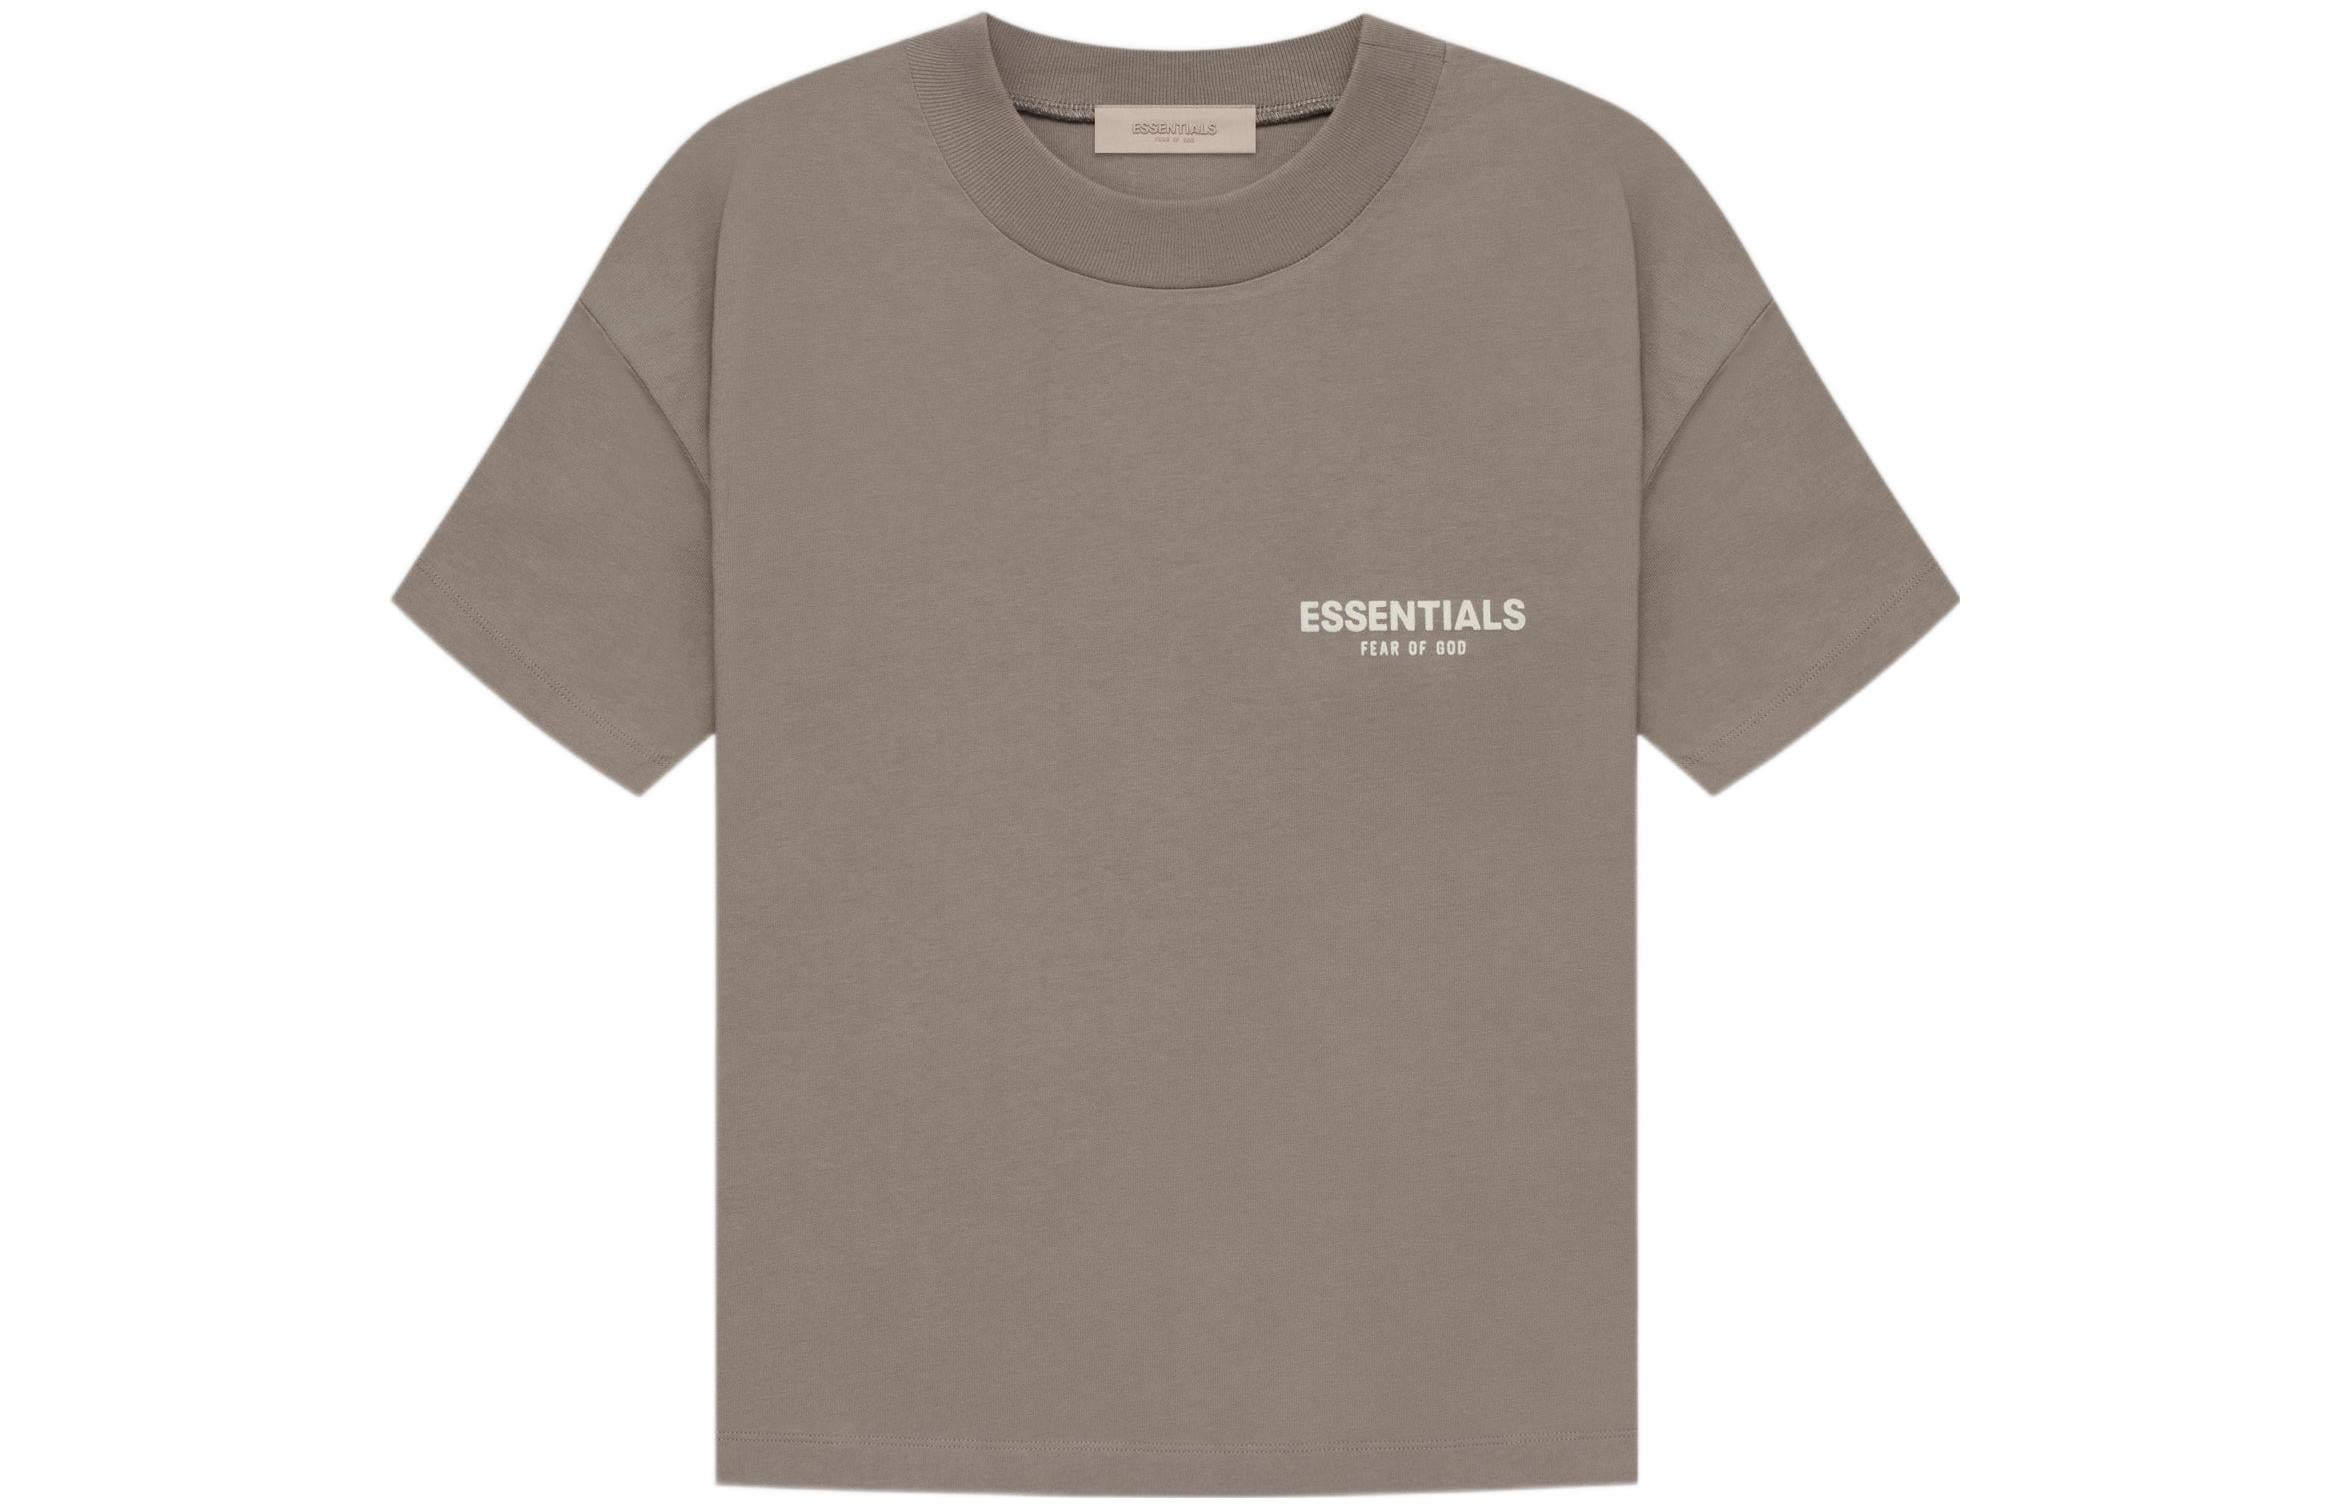 Футболка Fear of God Essentials, серый/коричневый футболка с короткими рукавами fear of god essentials цвет песок